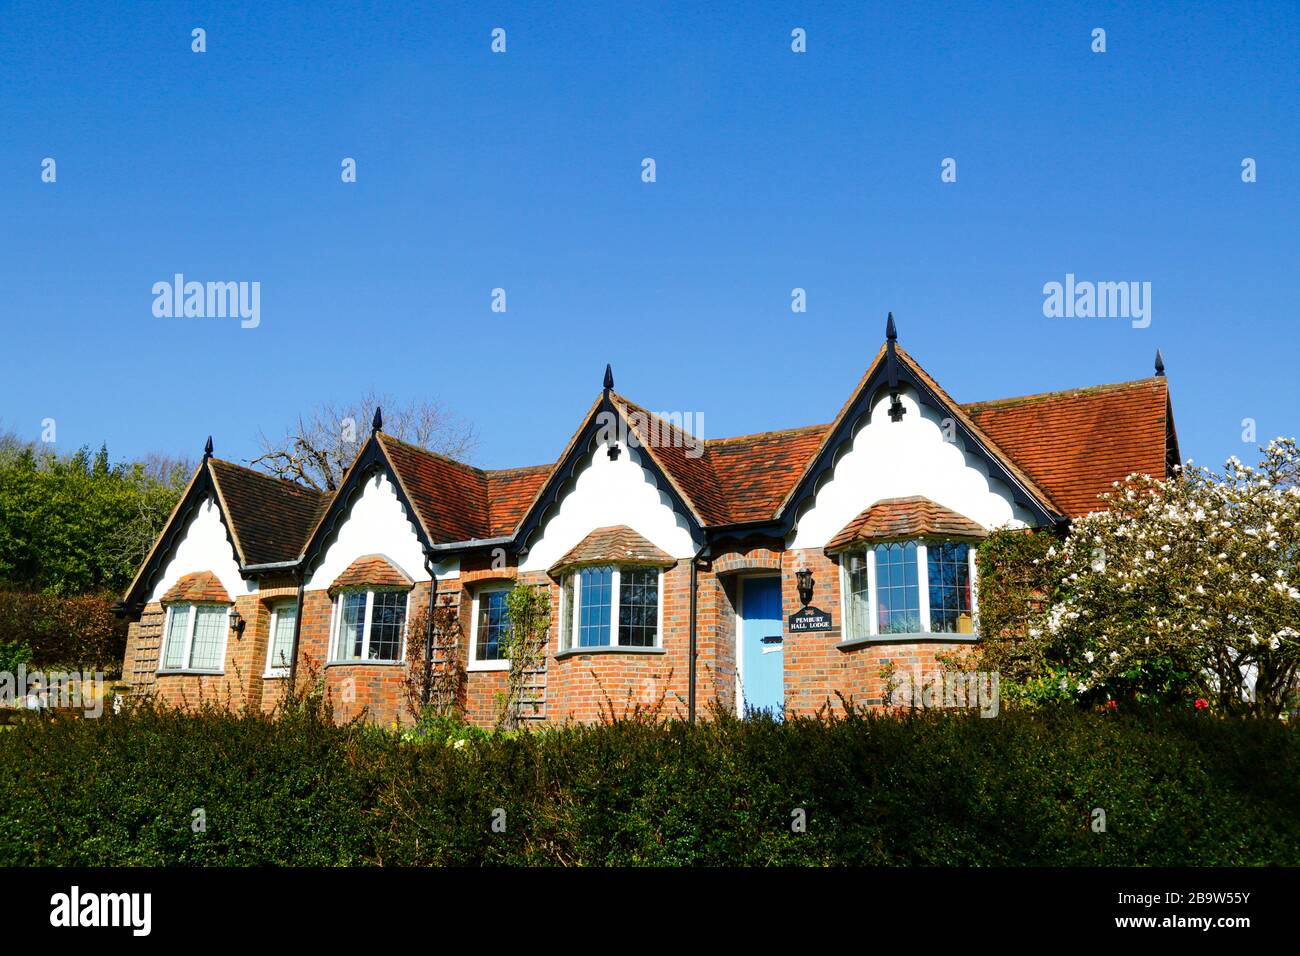 Pembury Hall Lodge cottages, outside the village of Pembury, Kent, England Stock Photo